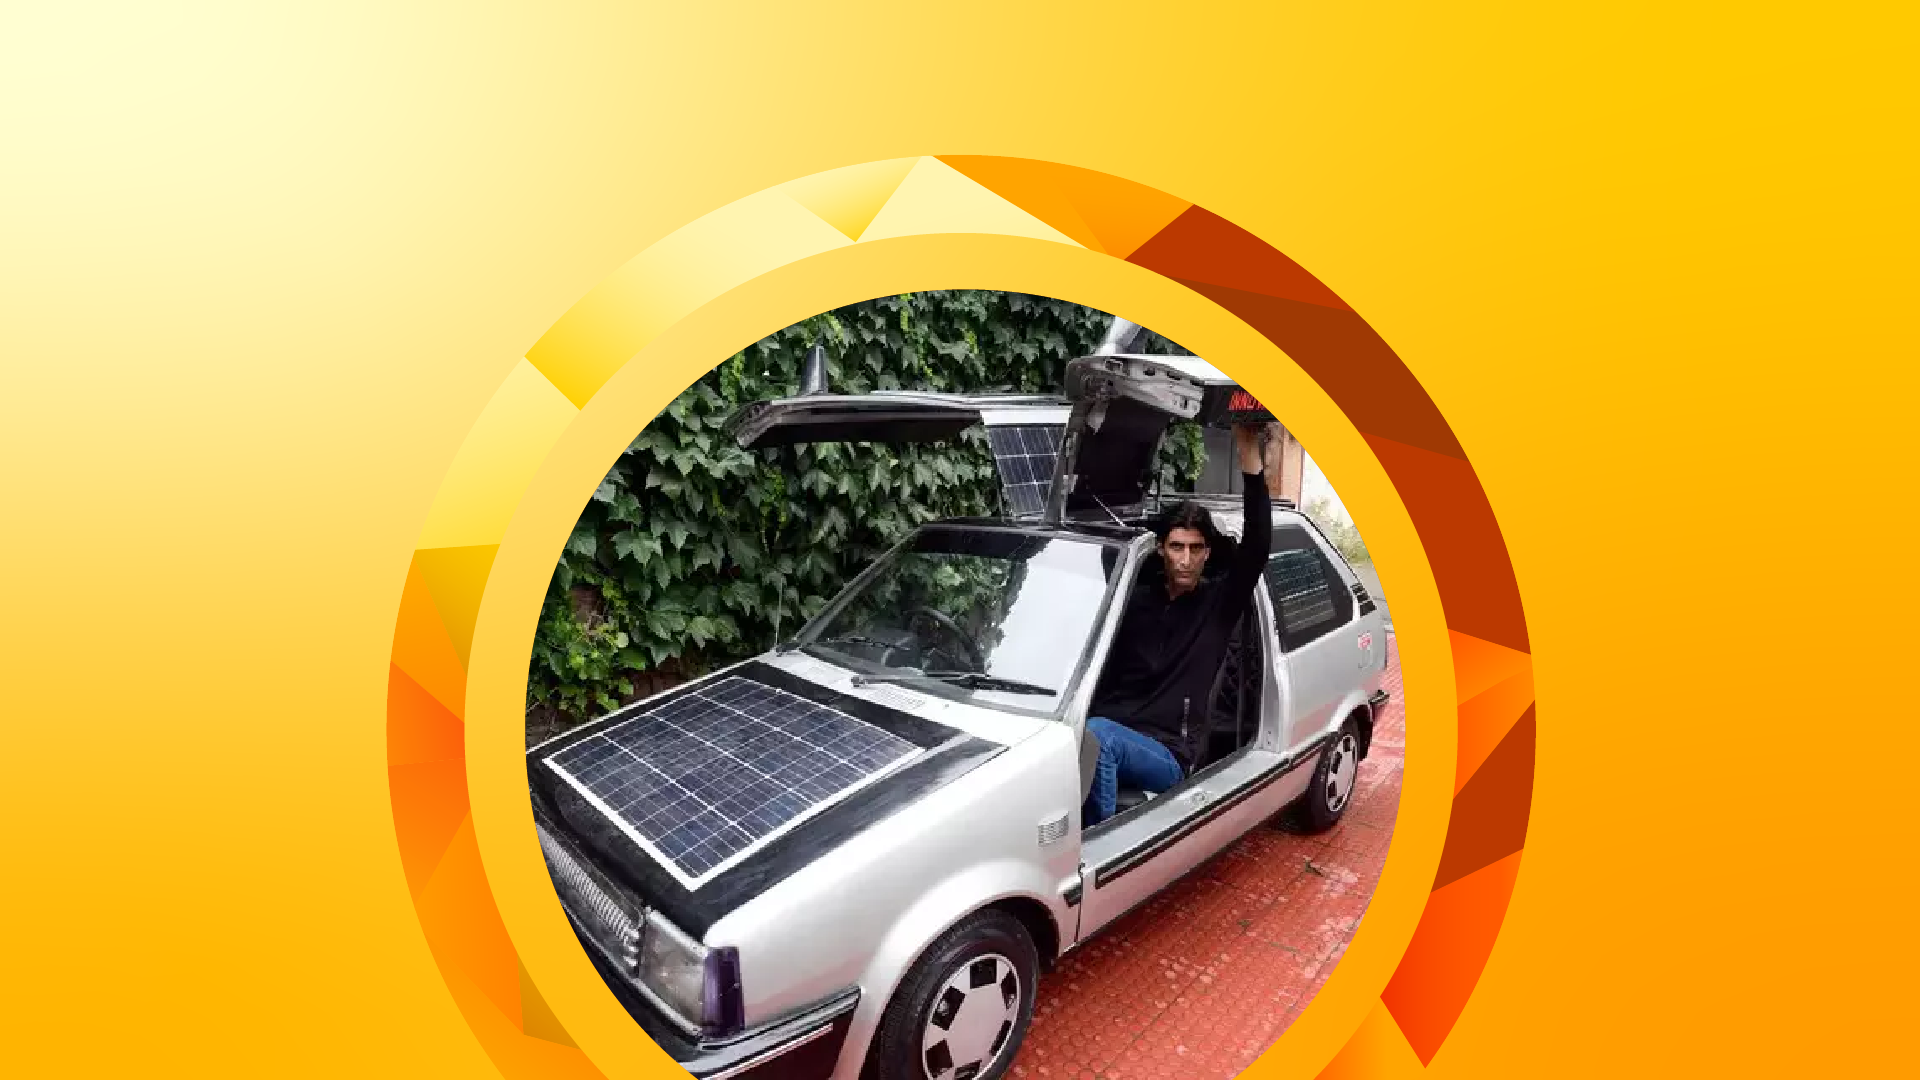 The Indian math teacher who built a solar car from scratch